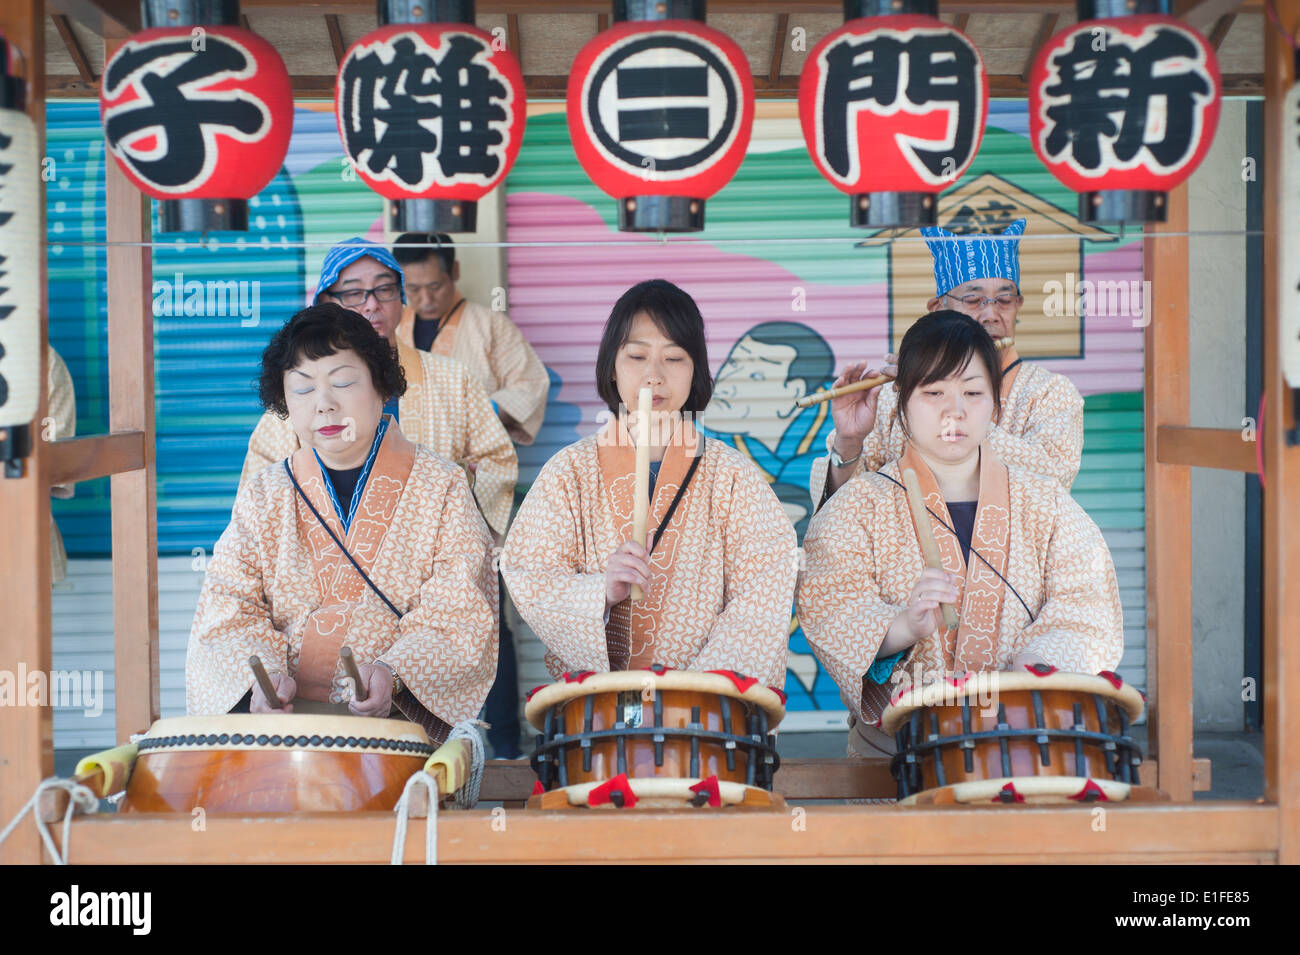 Tokyo Japan - Three women playing drums Stock Photo